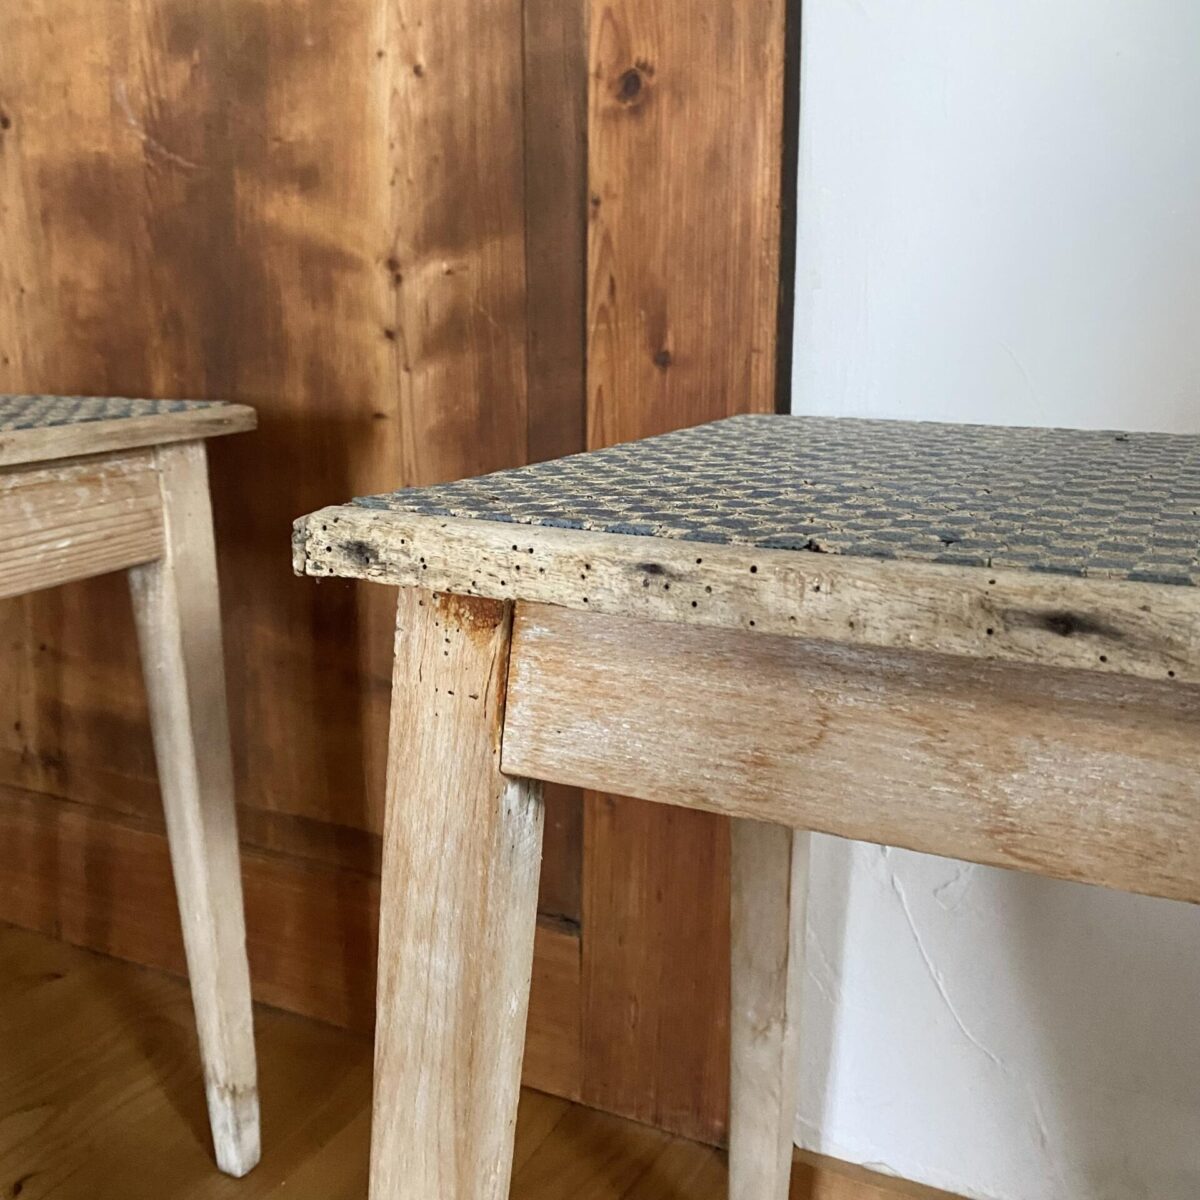 Deuxieme.shop Dekorative Holz Hocker mit Linoleum. Verbrauchter Zustand, passend als Sofa Beistelltisch Deko oder Pflanzen Sockel, auch zum sitzen noch genügend stabil. 